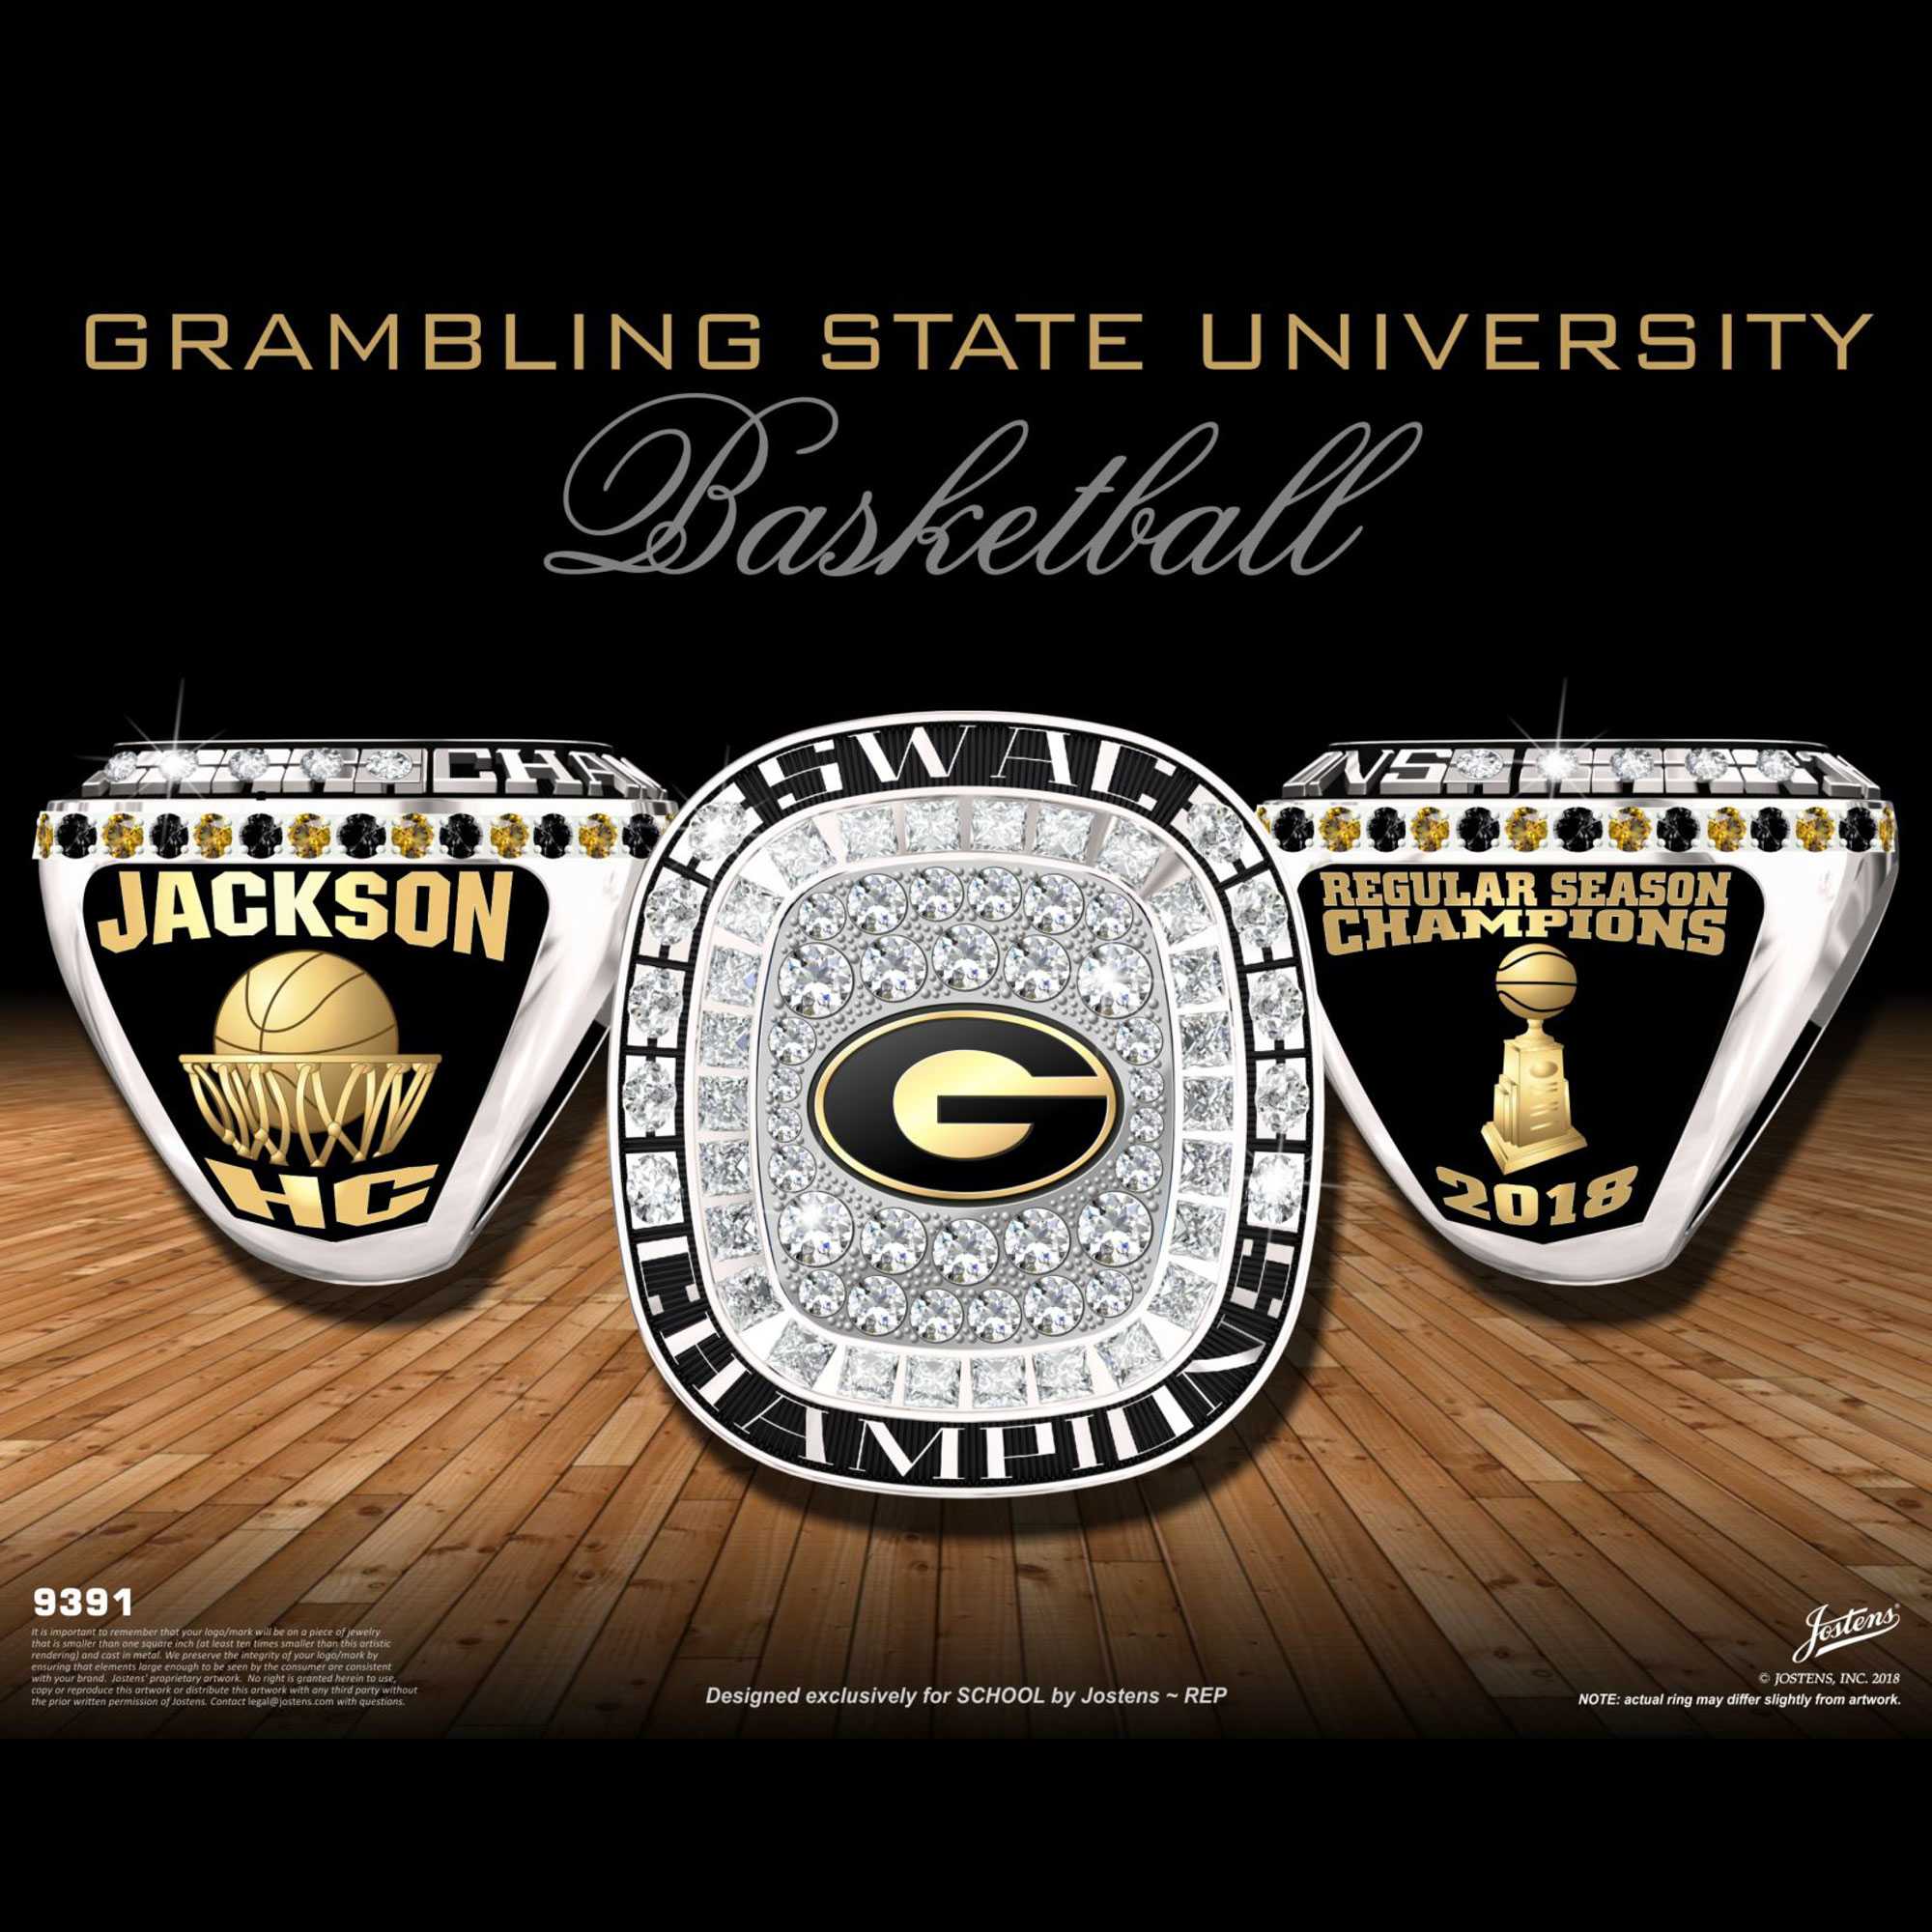 Grambling State University Men's Basketball 2018 SWAC Championship Ring